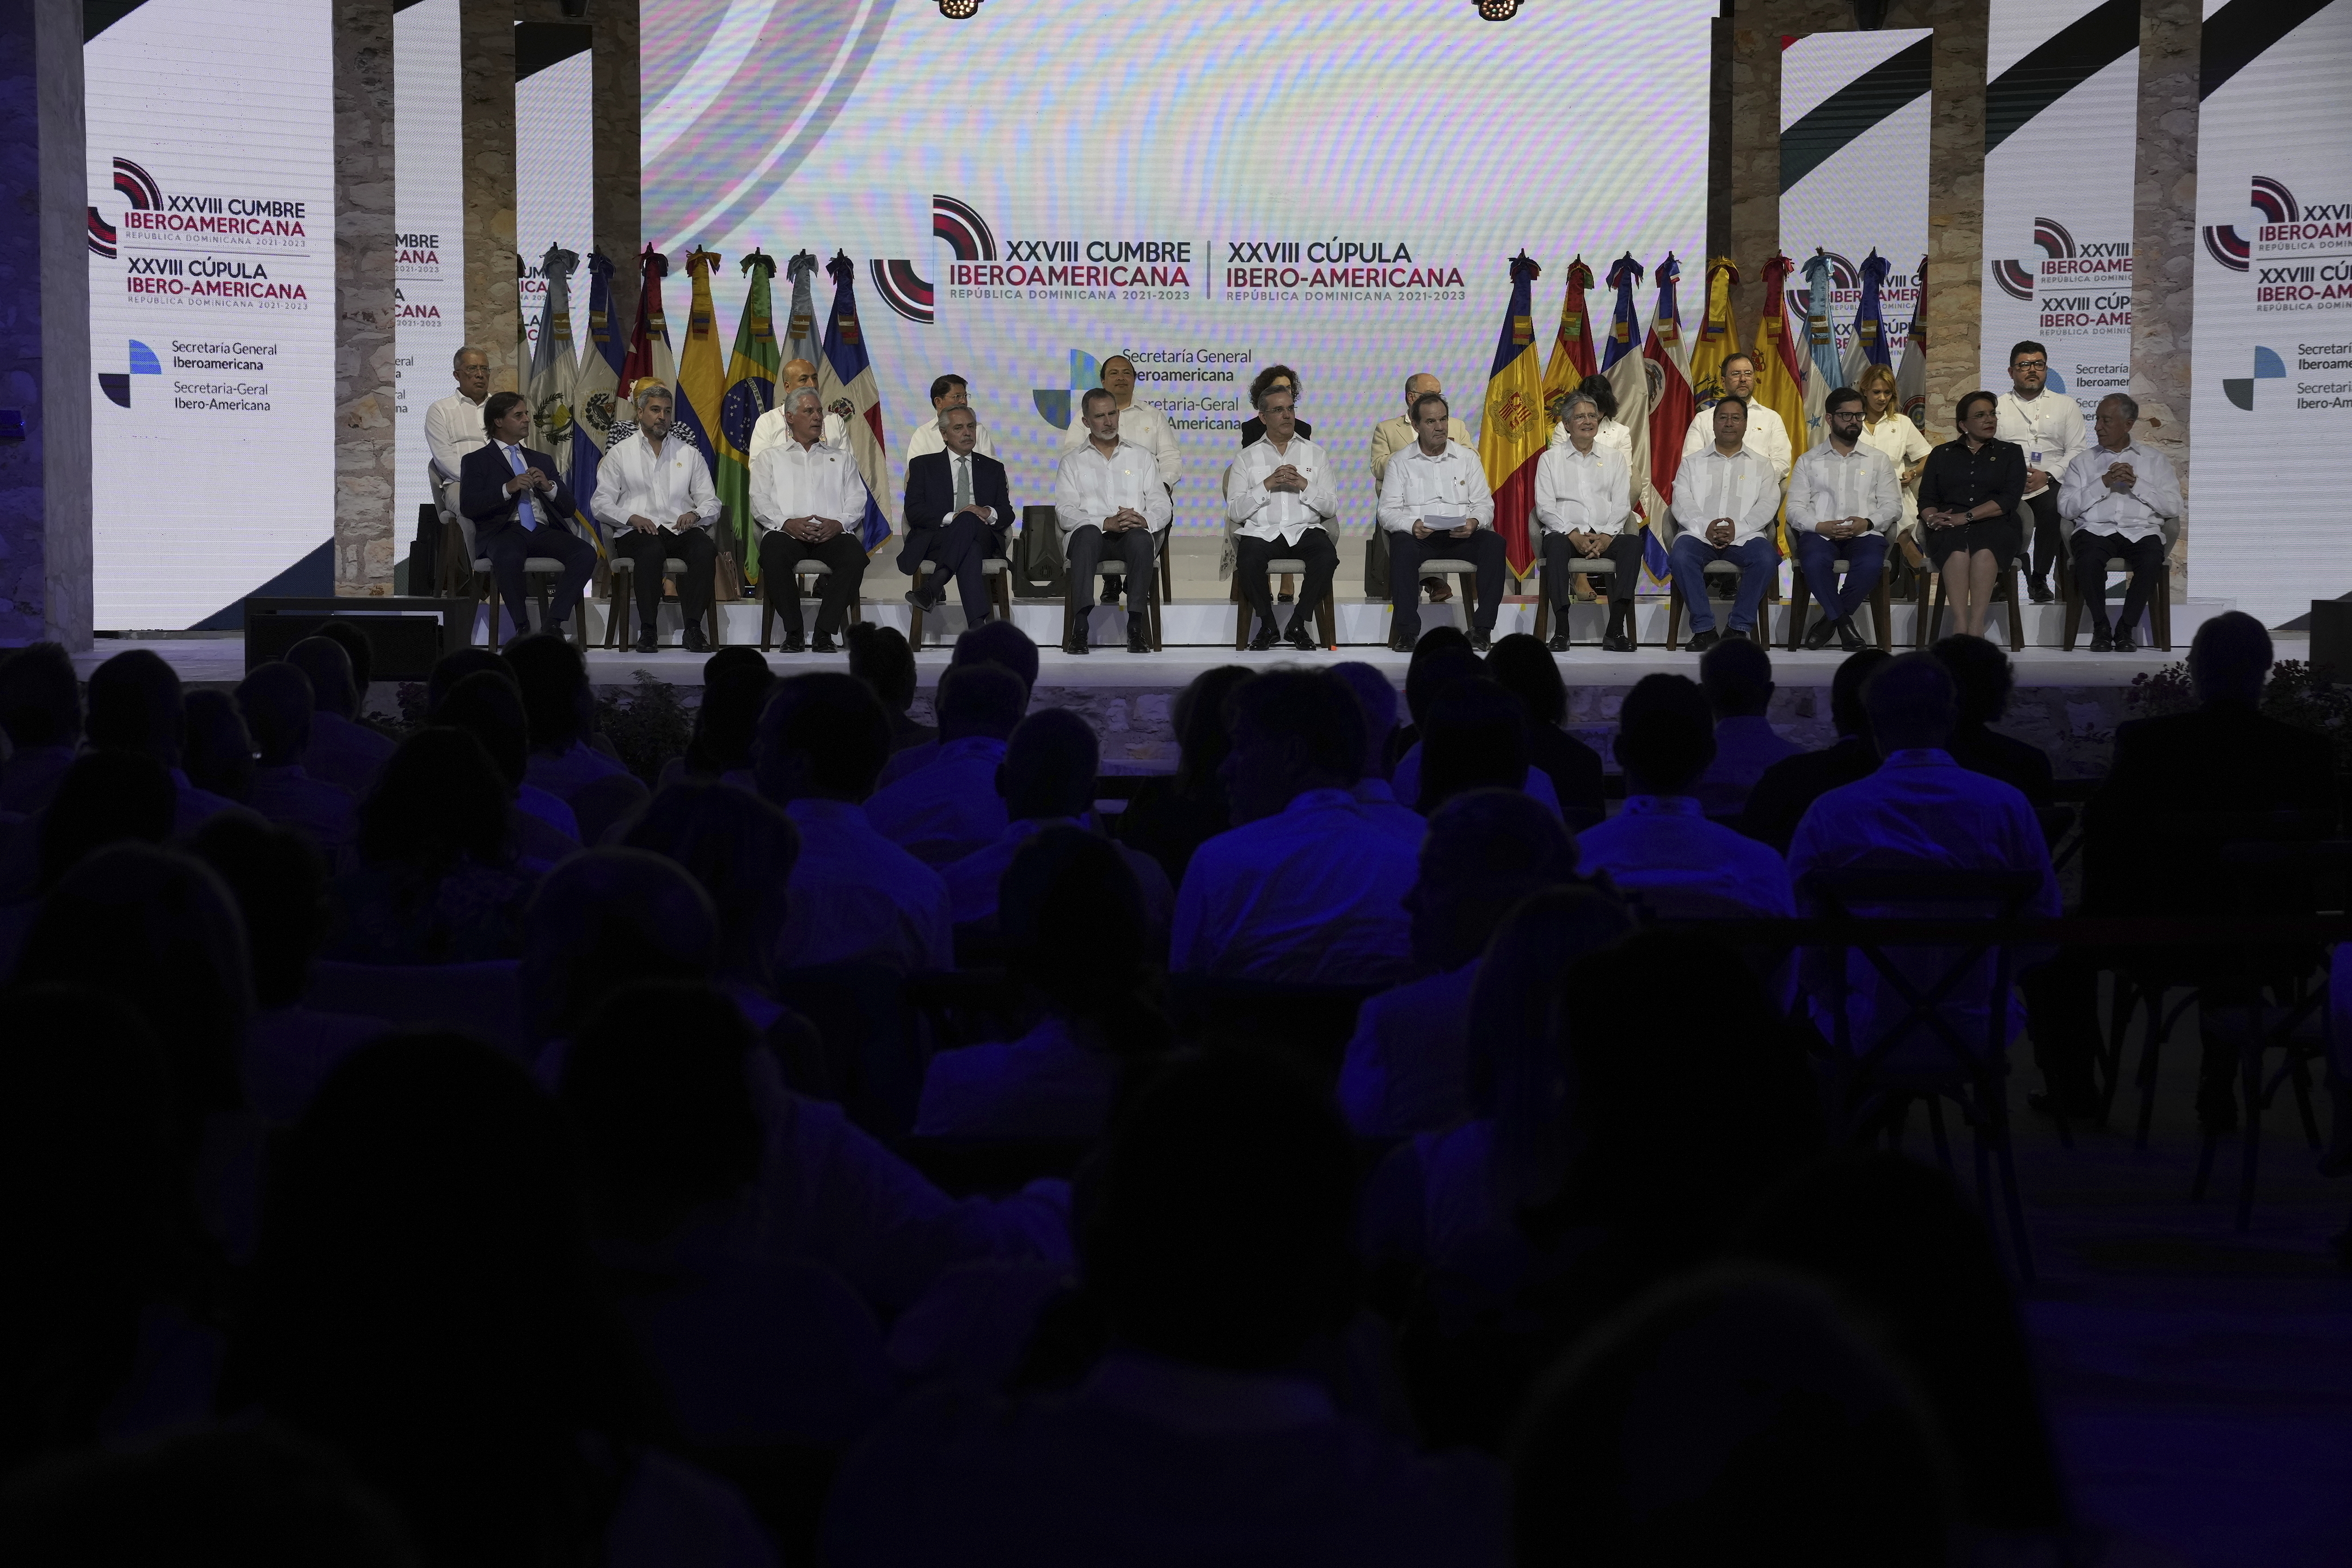 Presidentes, jefes de gobierno y representantes participan en la inauguración de la 28va Cumbre Iberoamericana, en Santo Domingo, República Dominicana, el viernes 24 de marzo de 2023. (Foto AP/Ariana Cubillos)